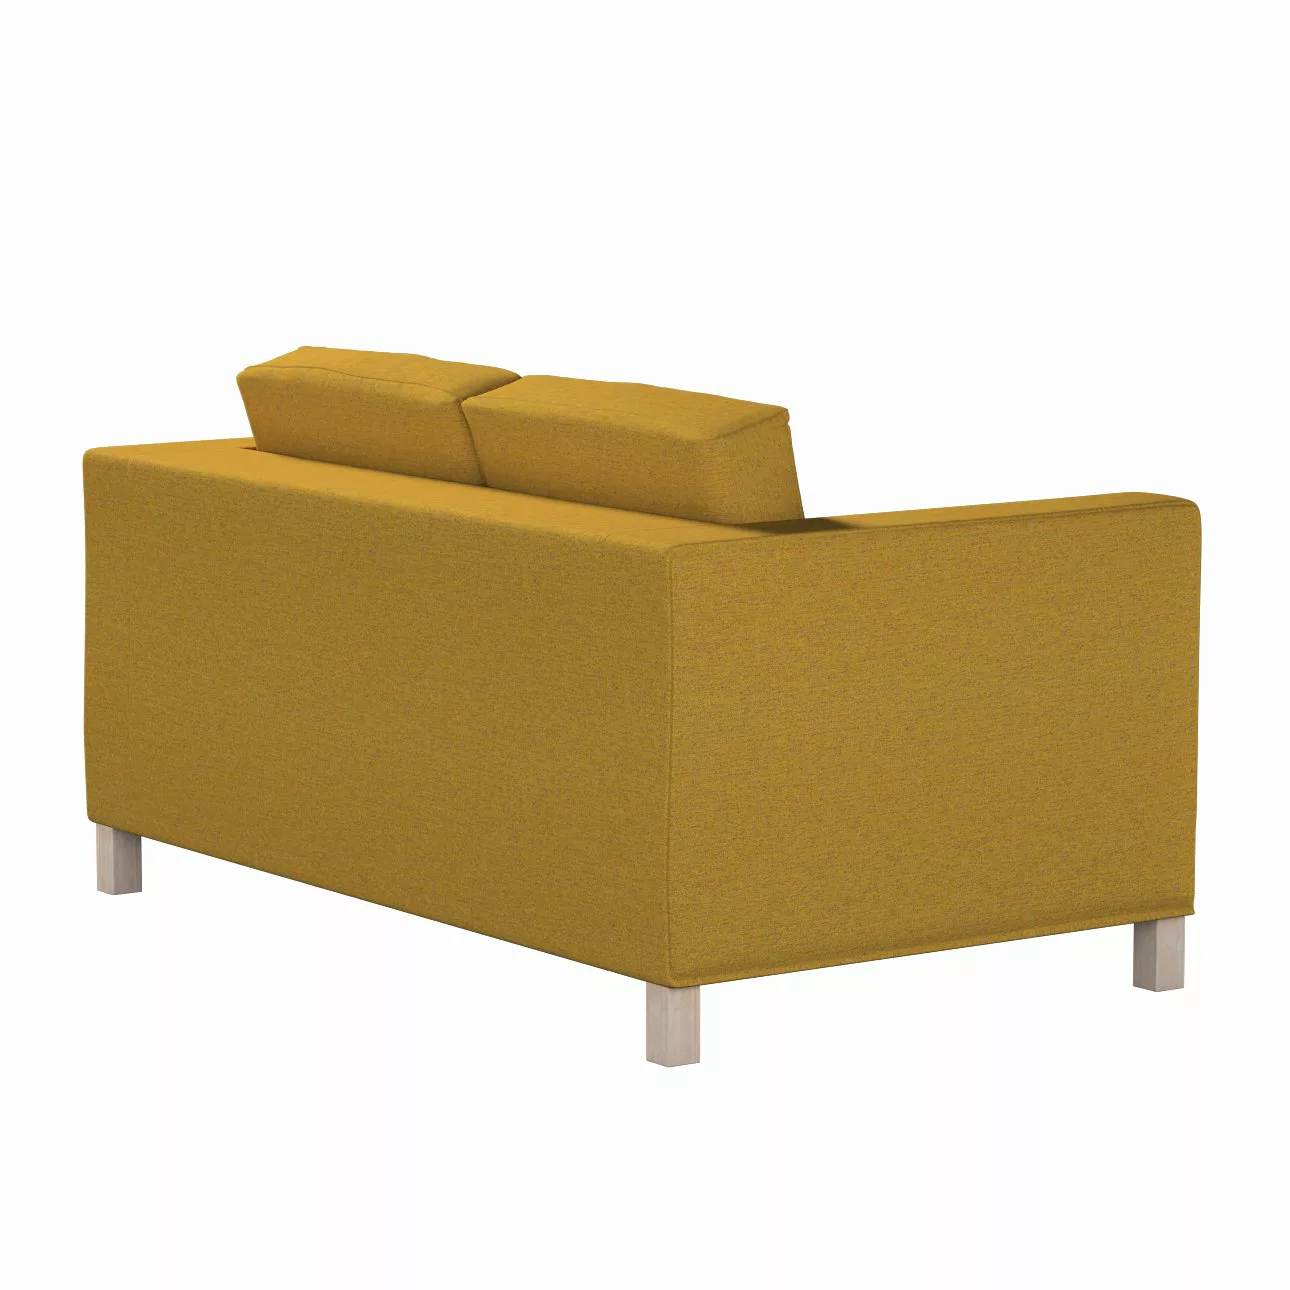 Bezug für Karlanda 2-Sitzer Sofa nicht ausklappbar, kurz, gelb, 60cm x 30cm günstig online kaufen